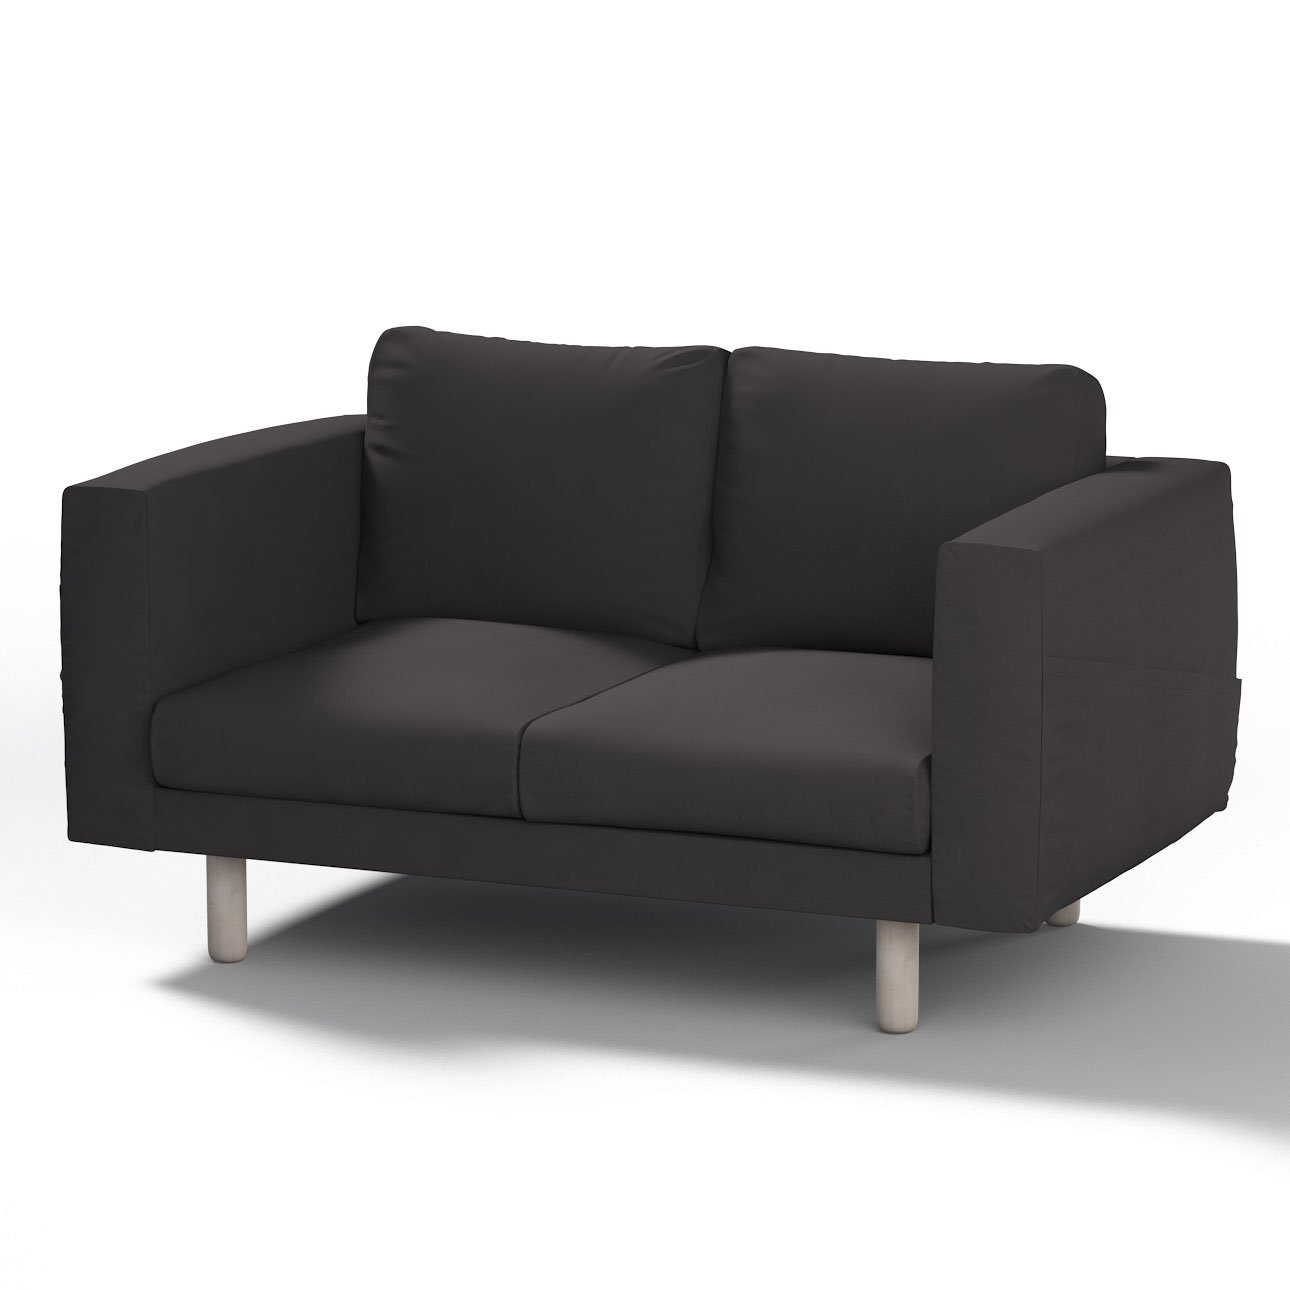 Bezug für Norsborg 2-Sitzer Sofa, schwarz, Norsborg 2-Sitzer Sofabezug, Cot günstig online kaufen